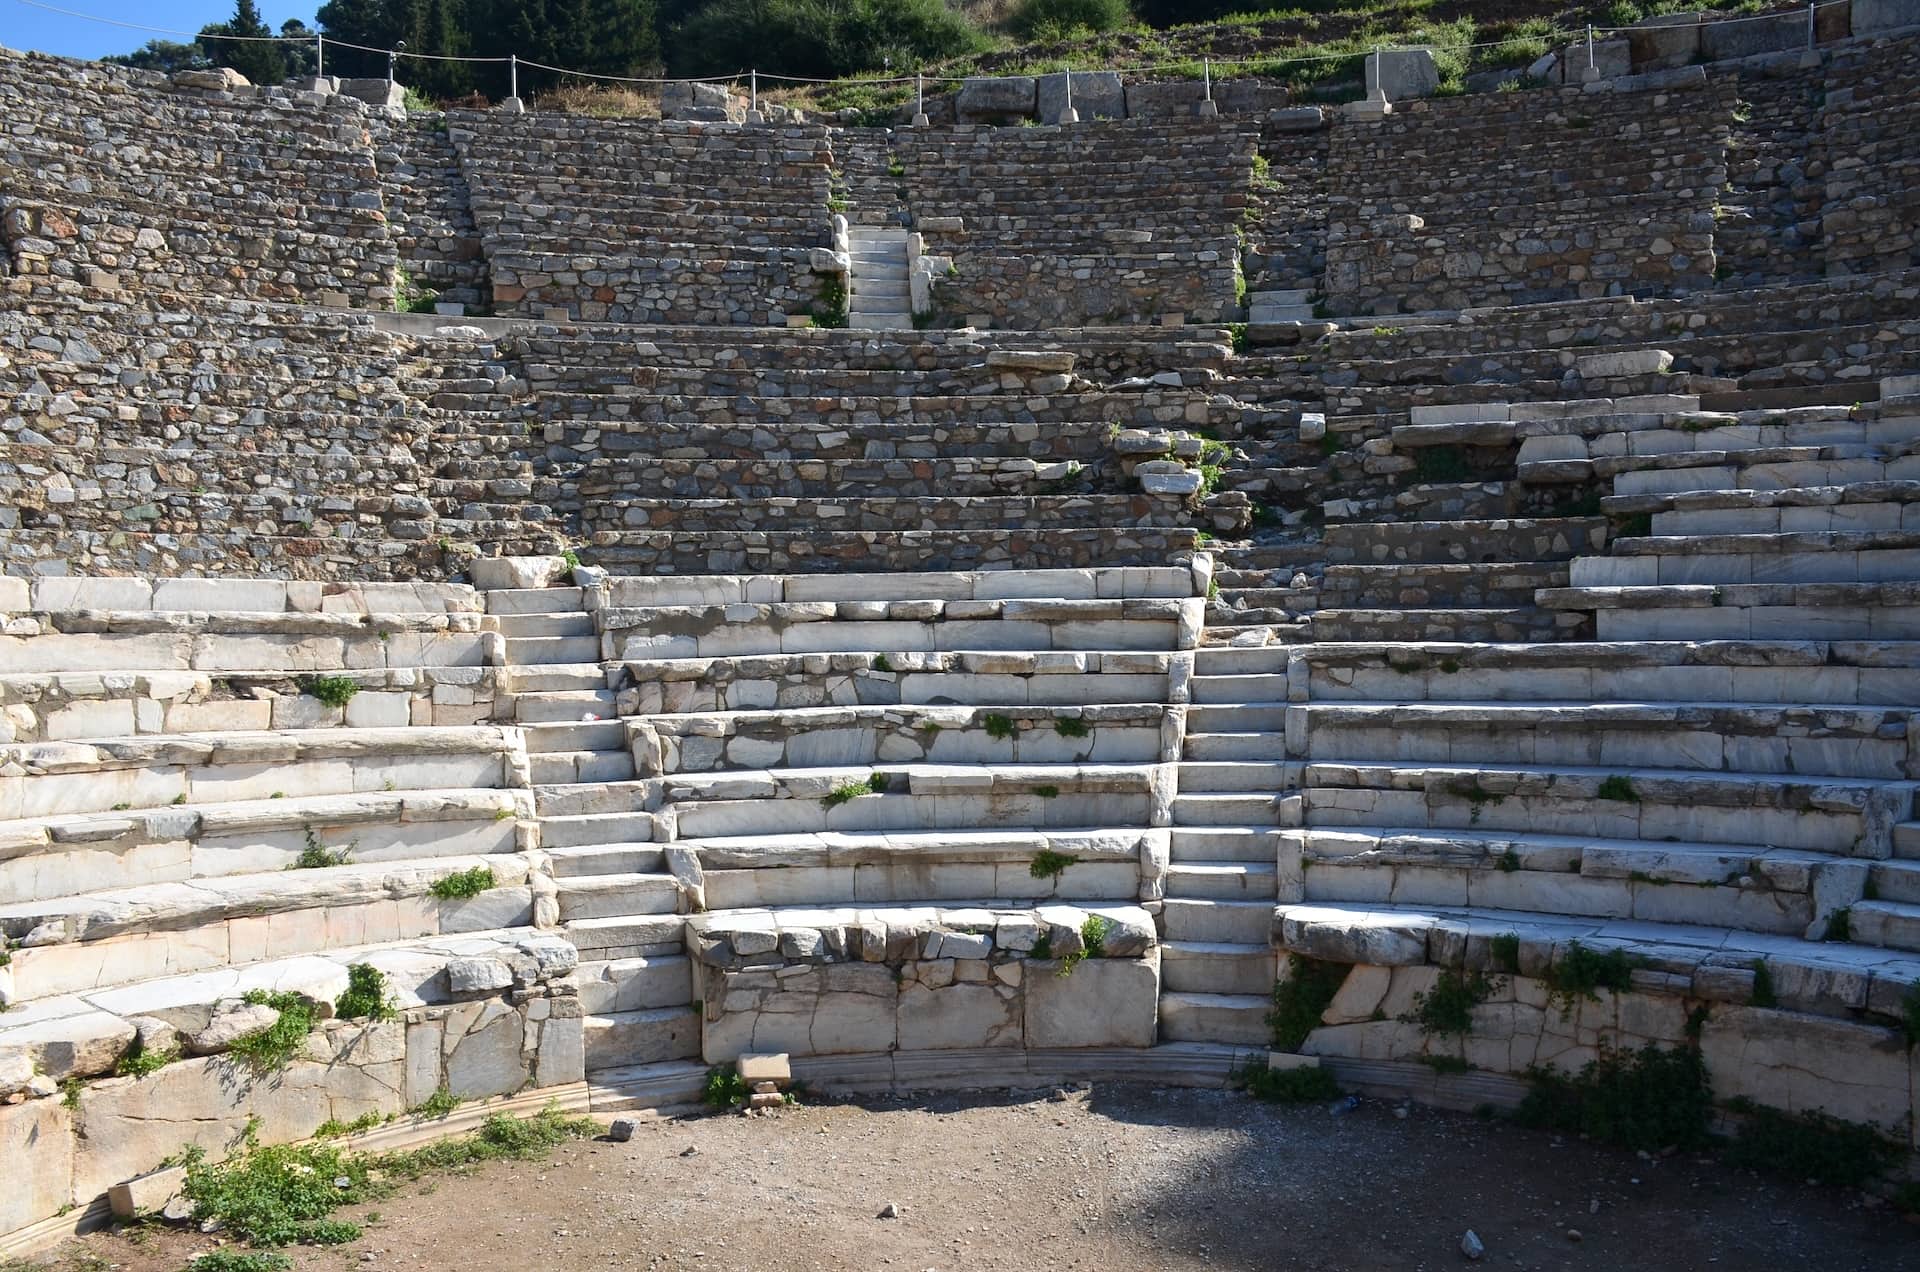 Odeon at Ephesus